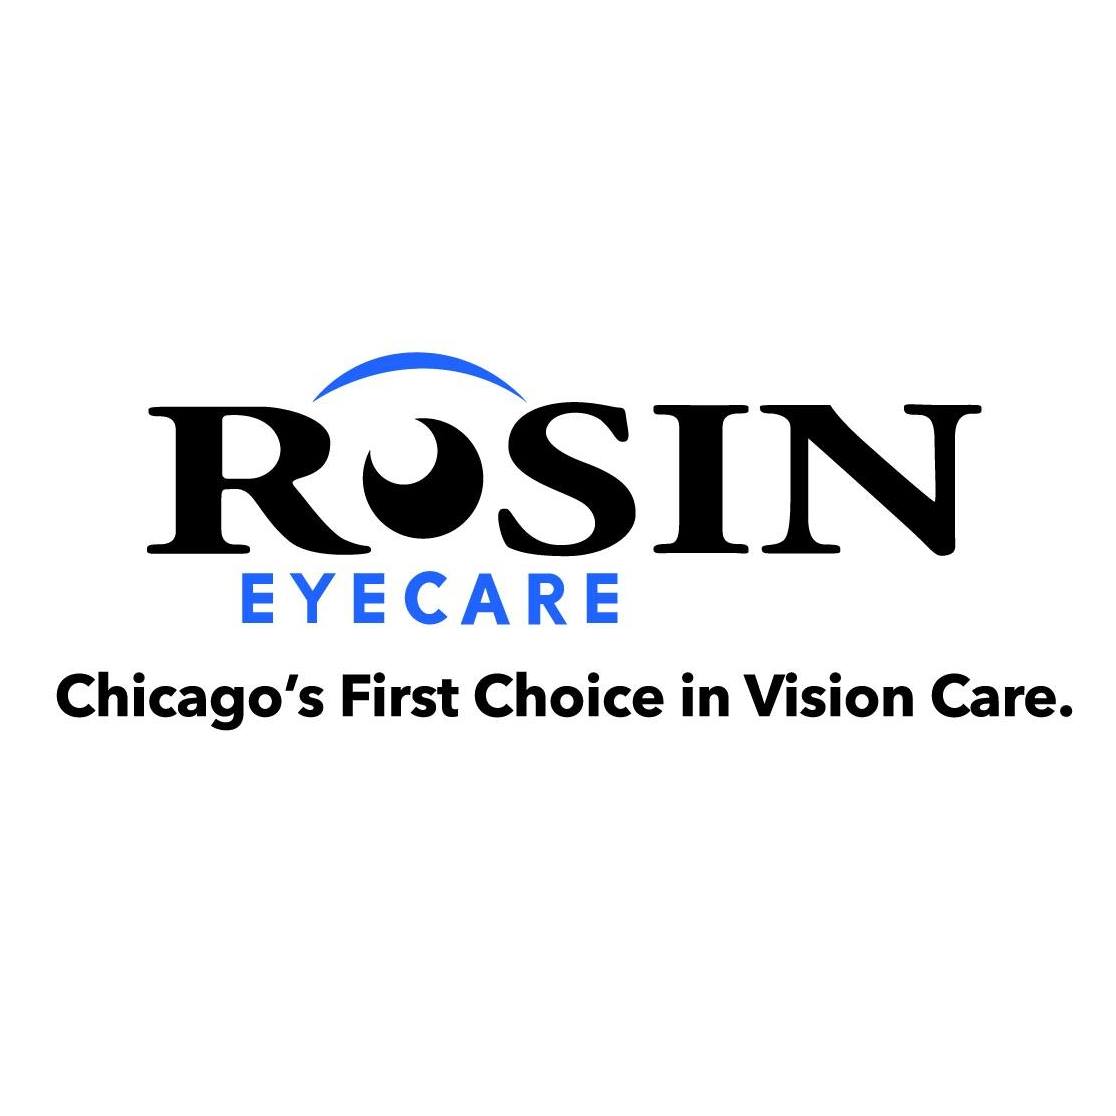 Rosin Eyecare